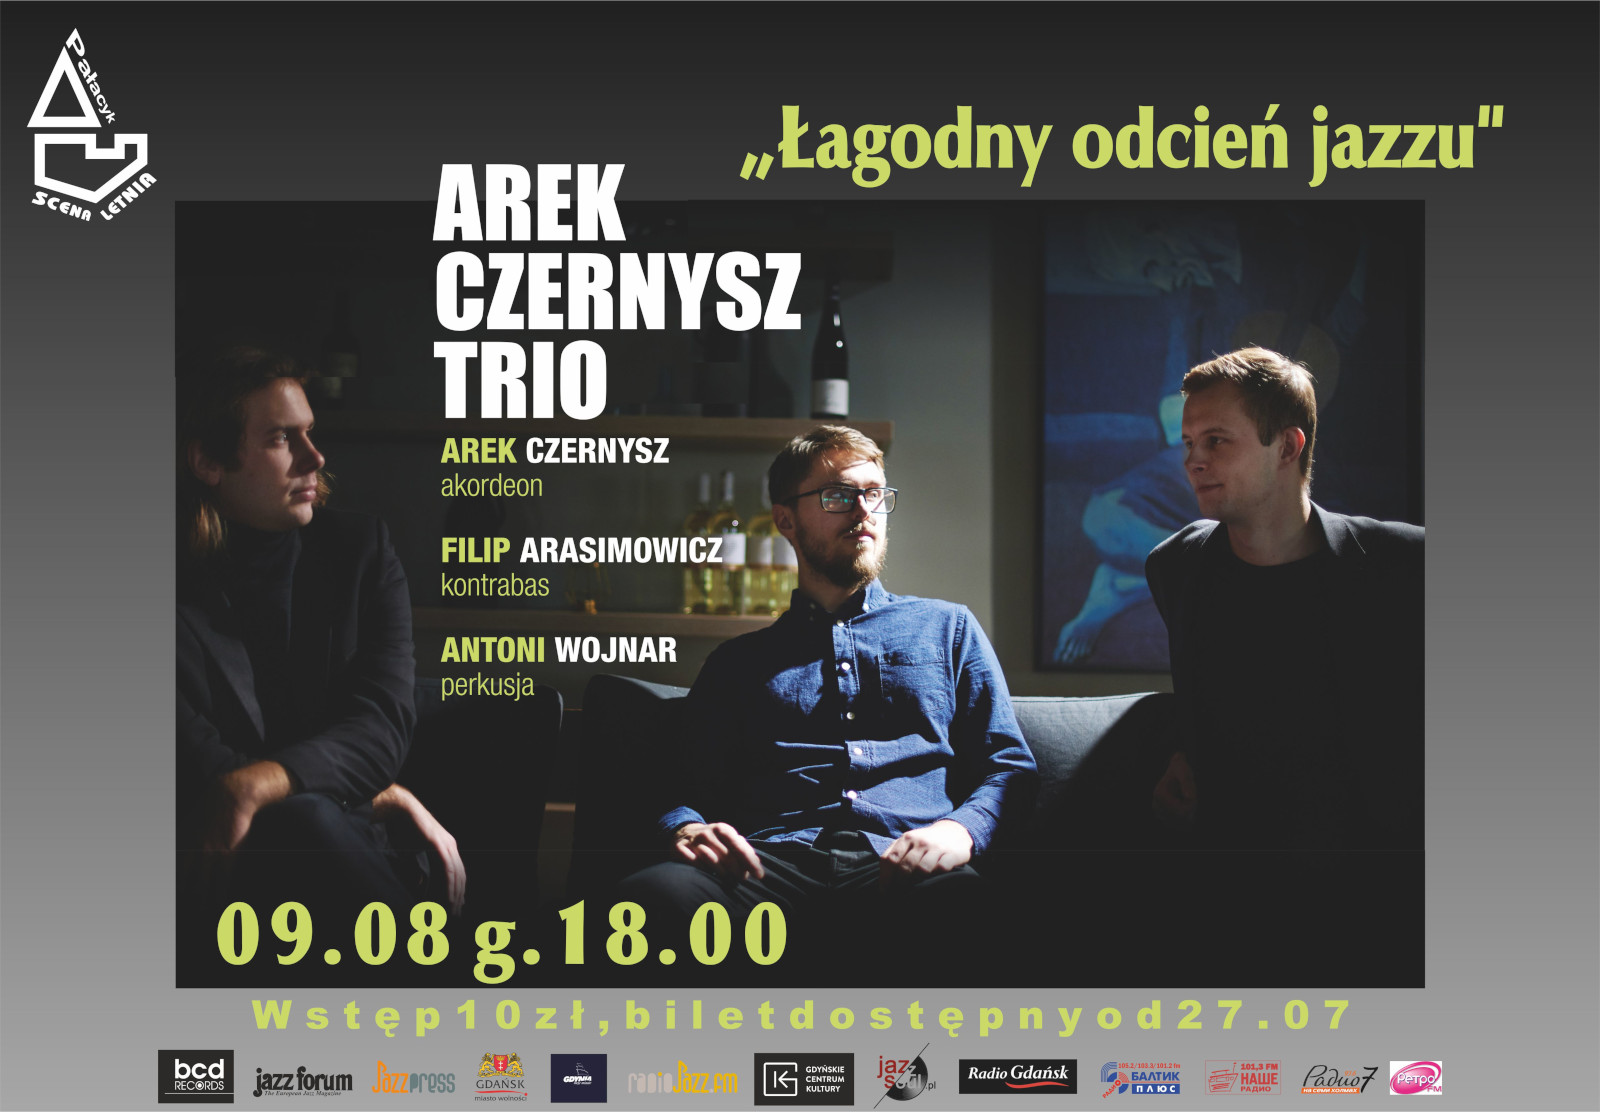 Arek Czernysz Trio